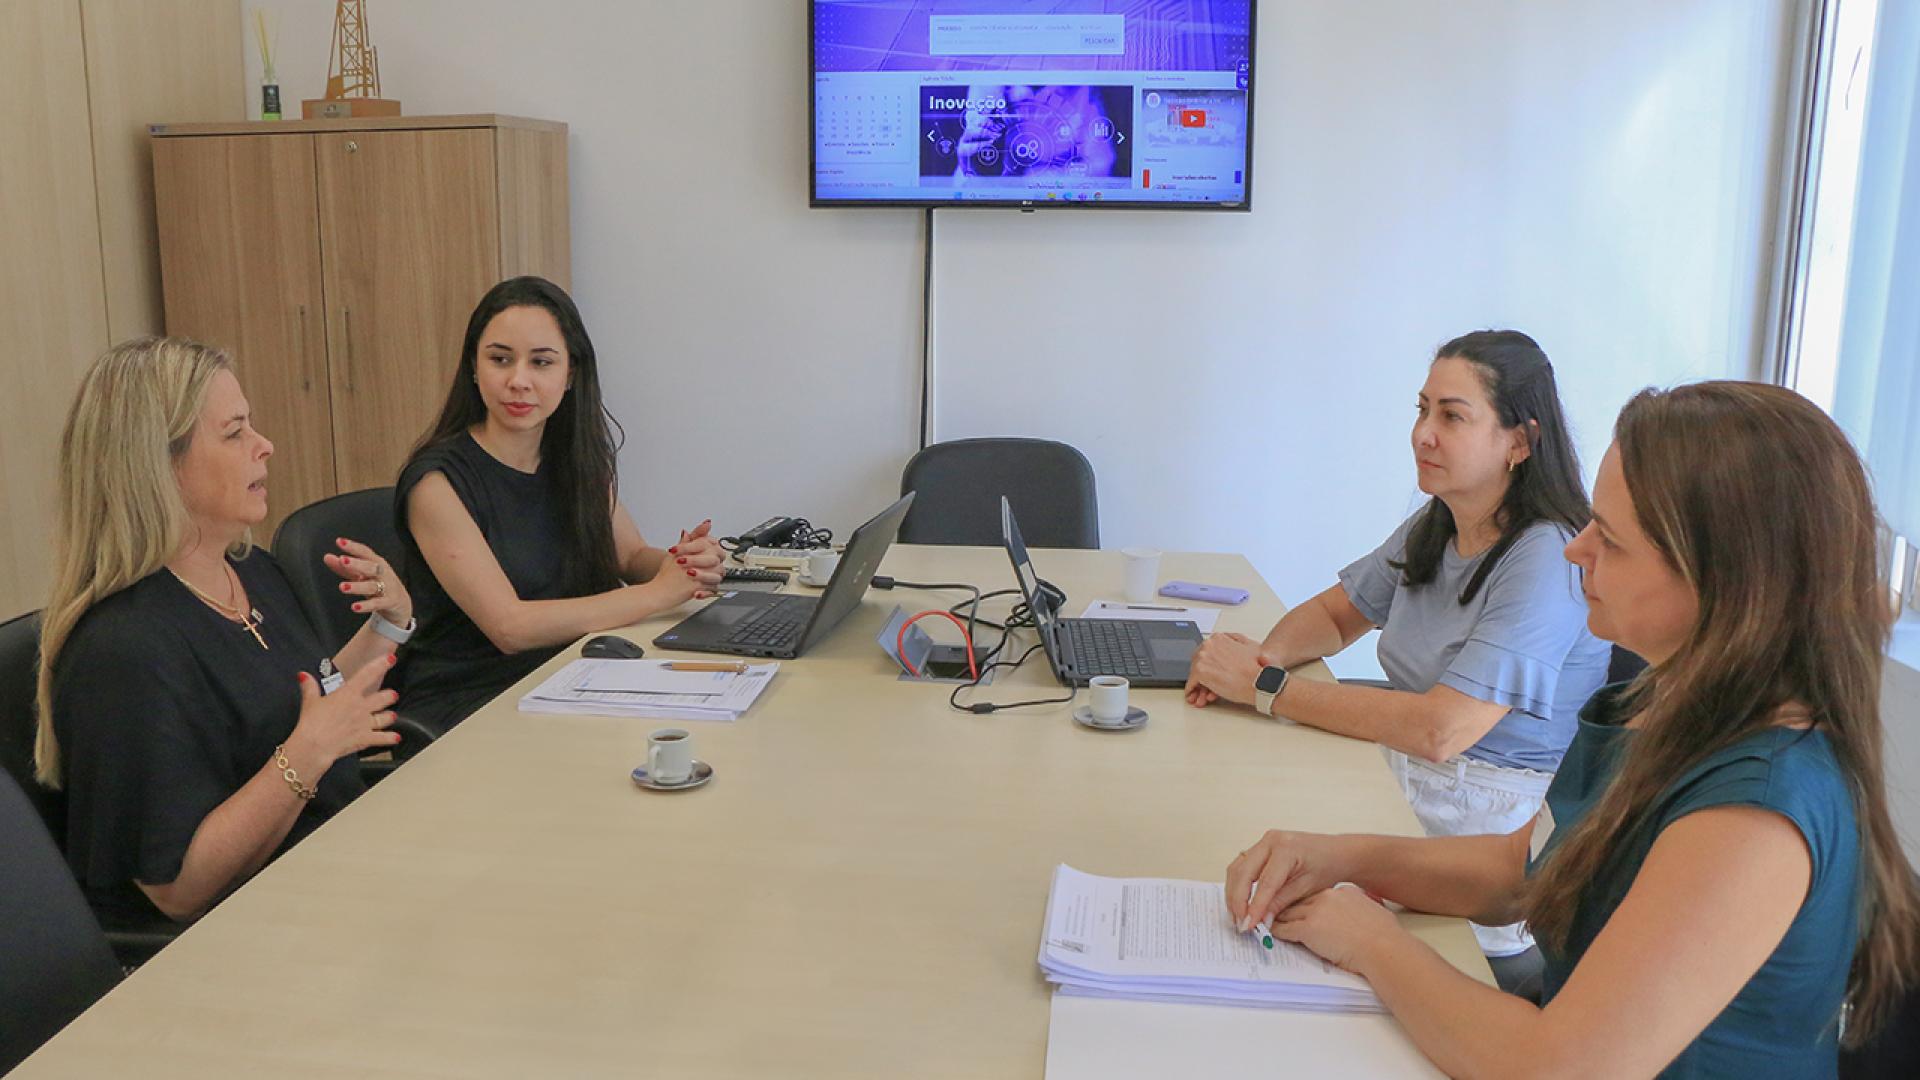 Imagem mostra quatro mulheres ao redor de uma mesa de cor clara. Ao fundo, há um monitor que mostra dados. Duas das mulheres estão com laptops abertos em sua frente